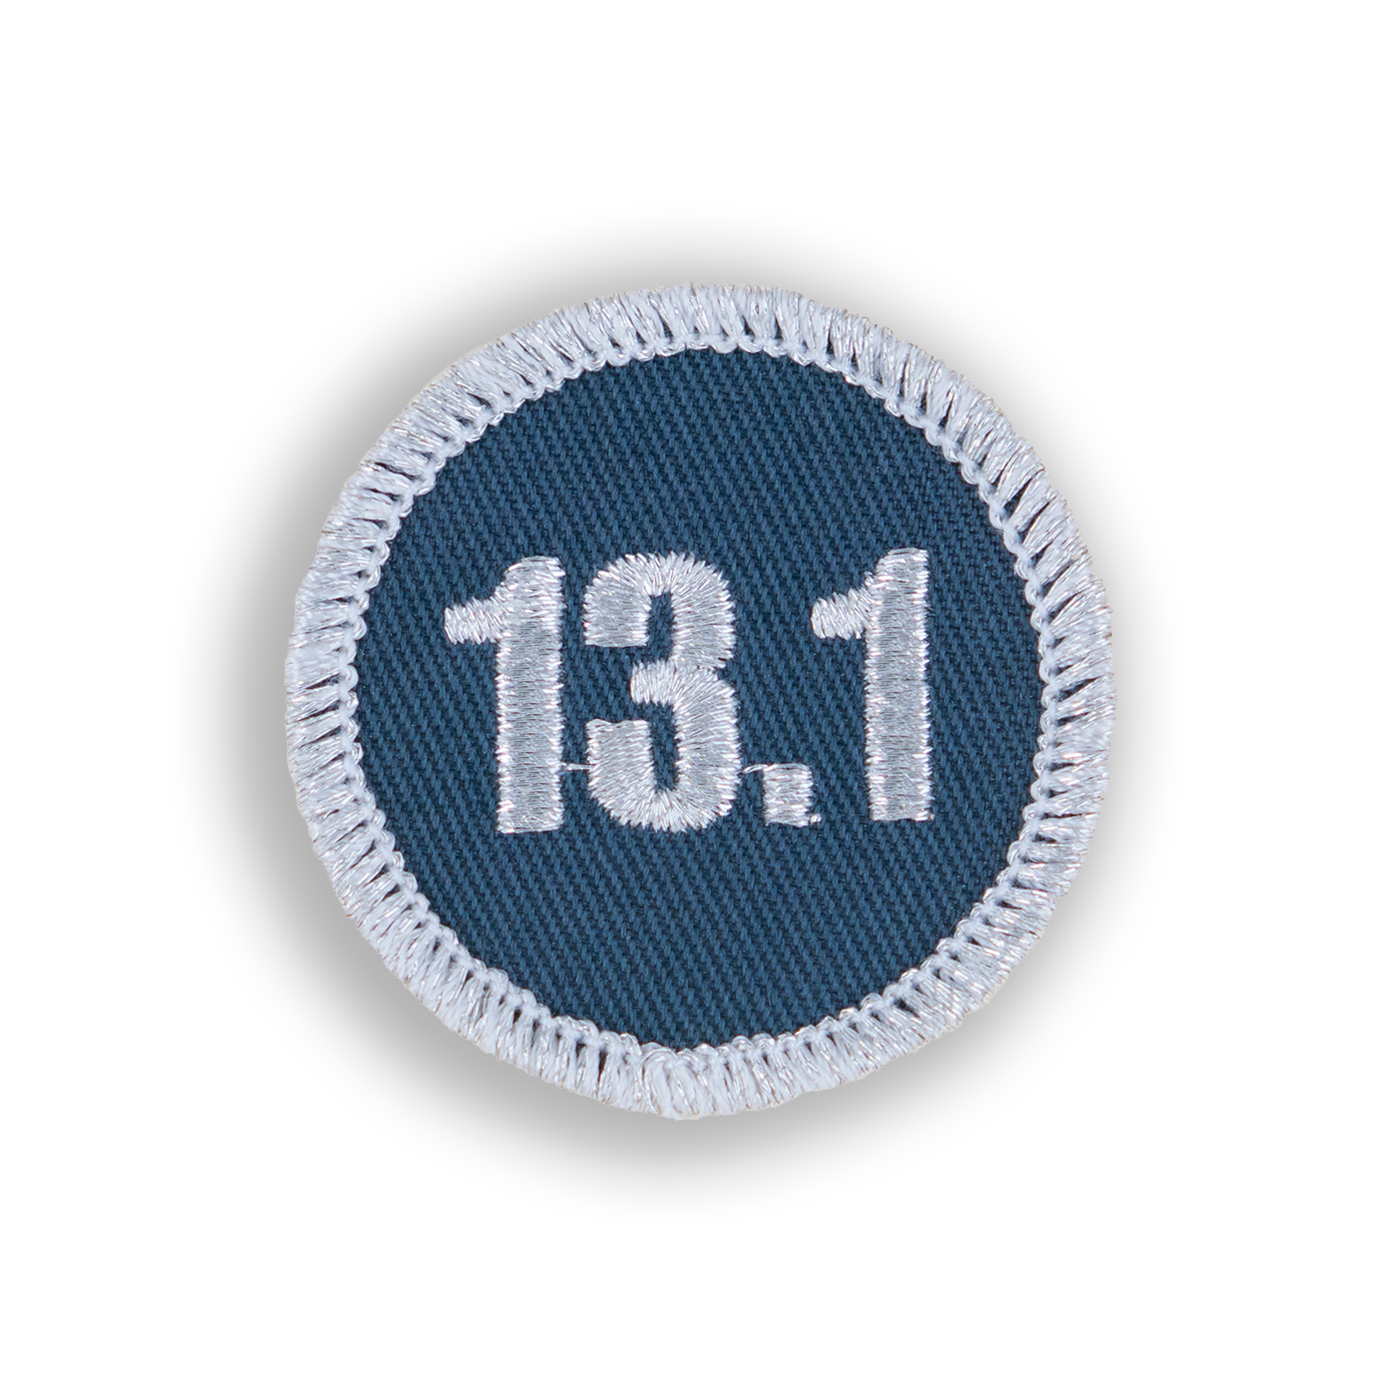 13.1 K Half Marathon Patch - Demerit Wear - Fake Merit Badges